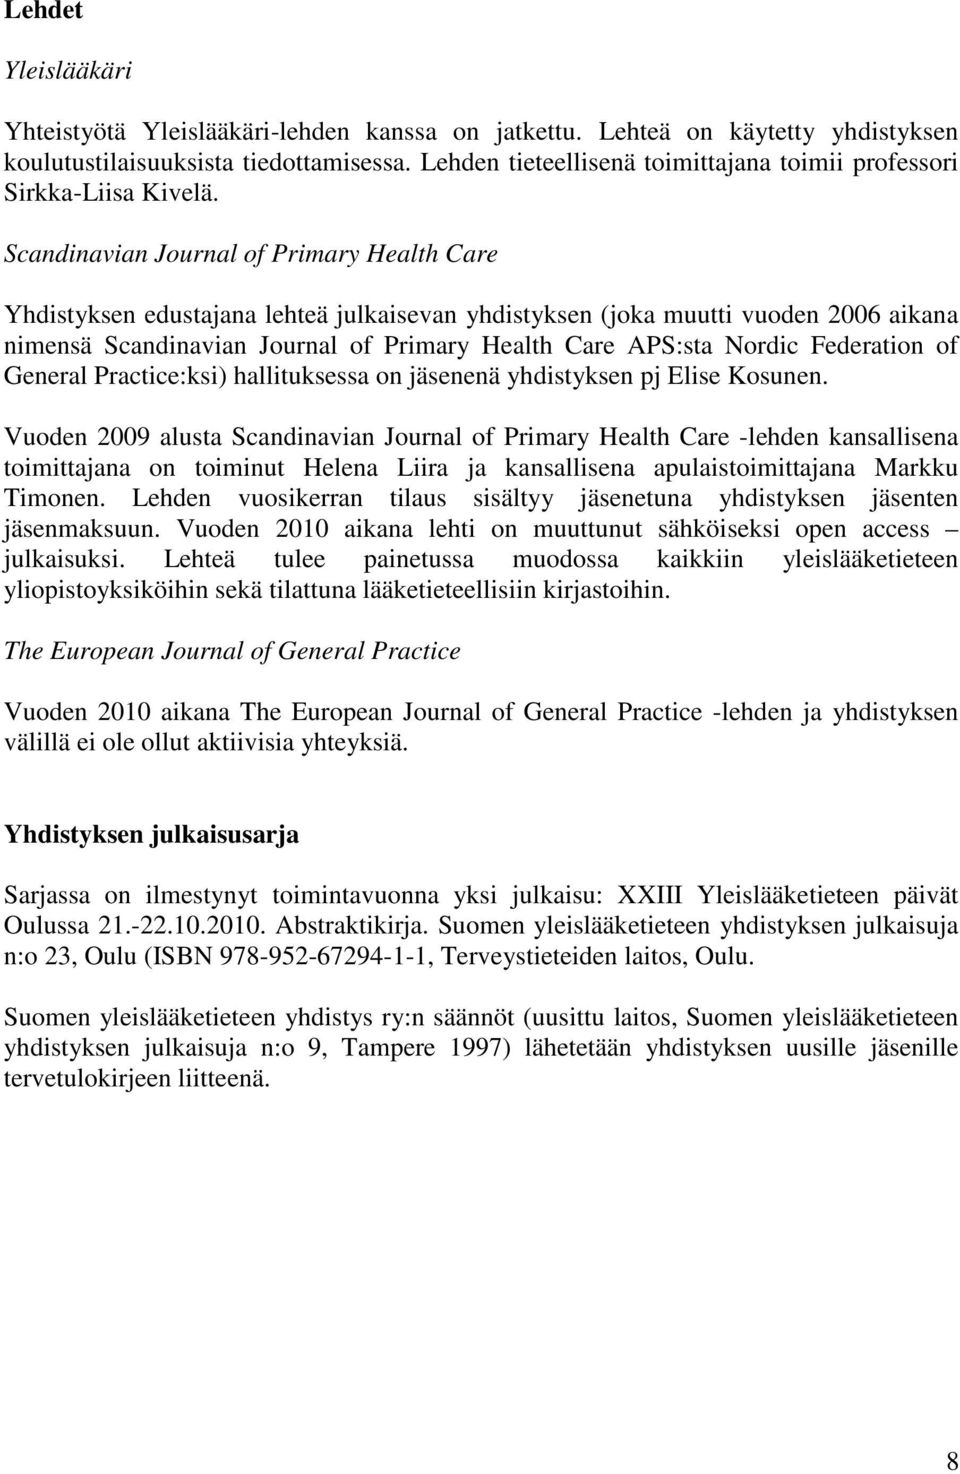 Scandinavian Journal of Primary Health Care Yhdistyksen edustajana lehteä julkaisevan yhdistyksen (joka muutti vuoden 2006 aikana nimensä Scandinavian Journal of Primary Health Care APS:sta Nordic